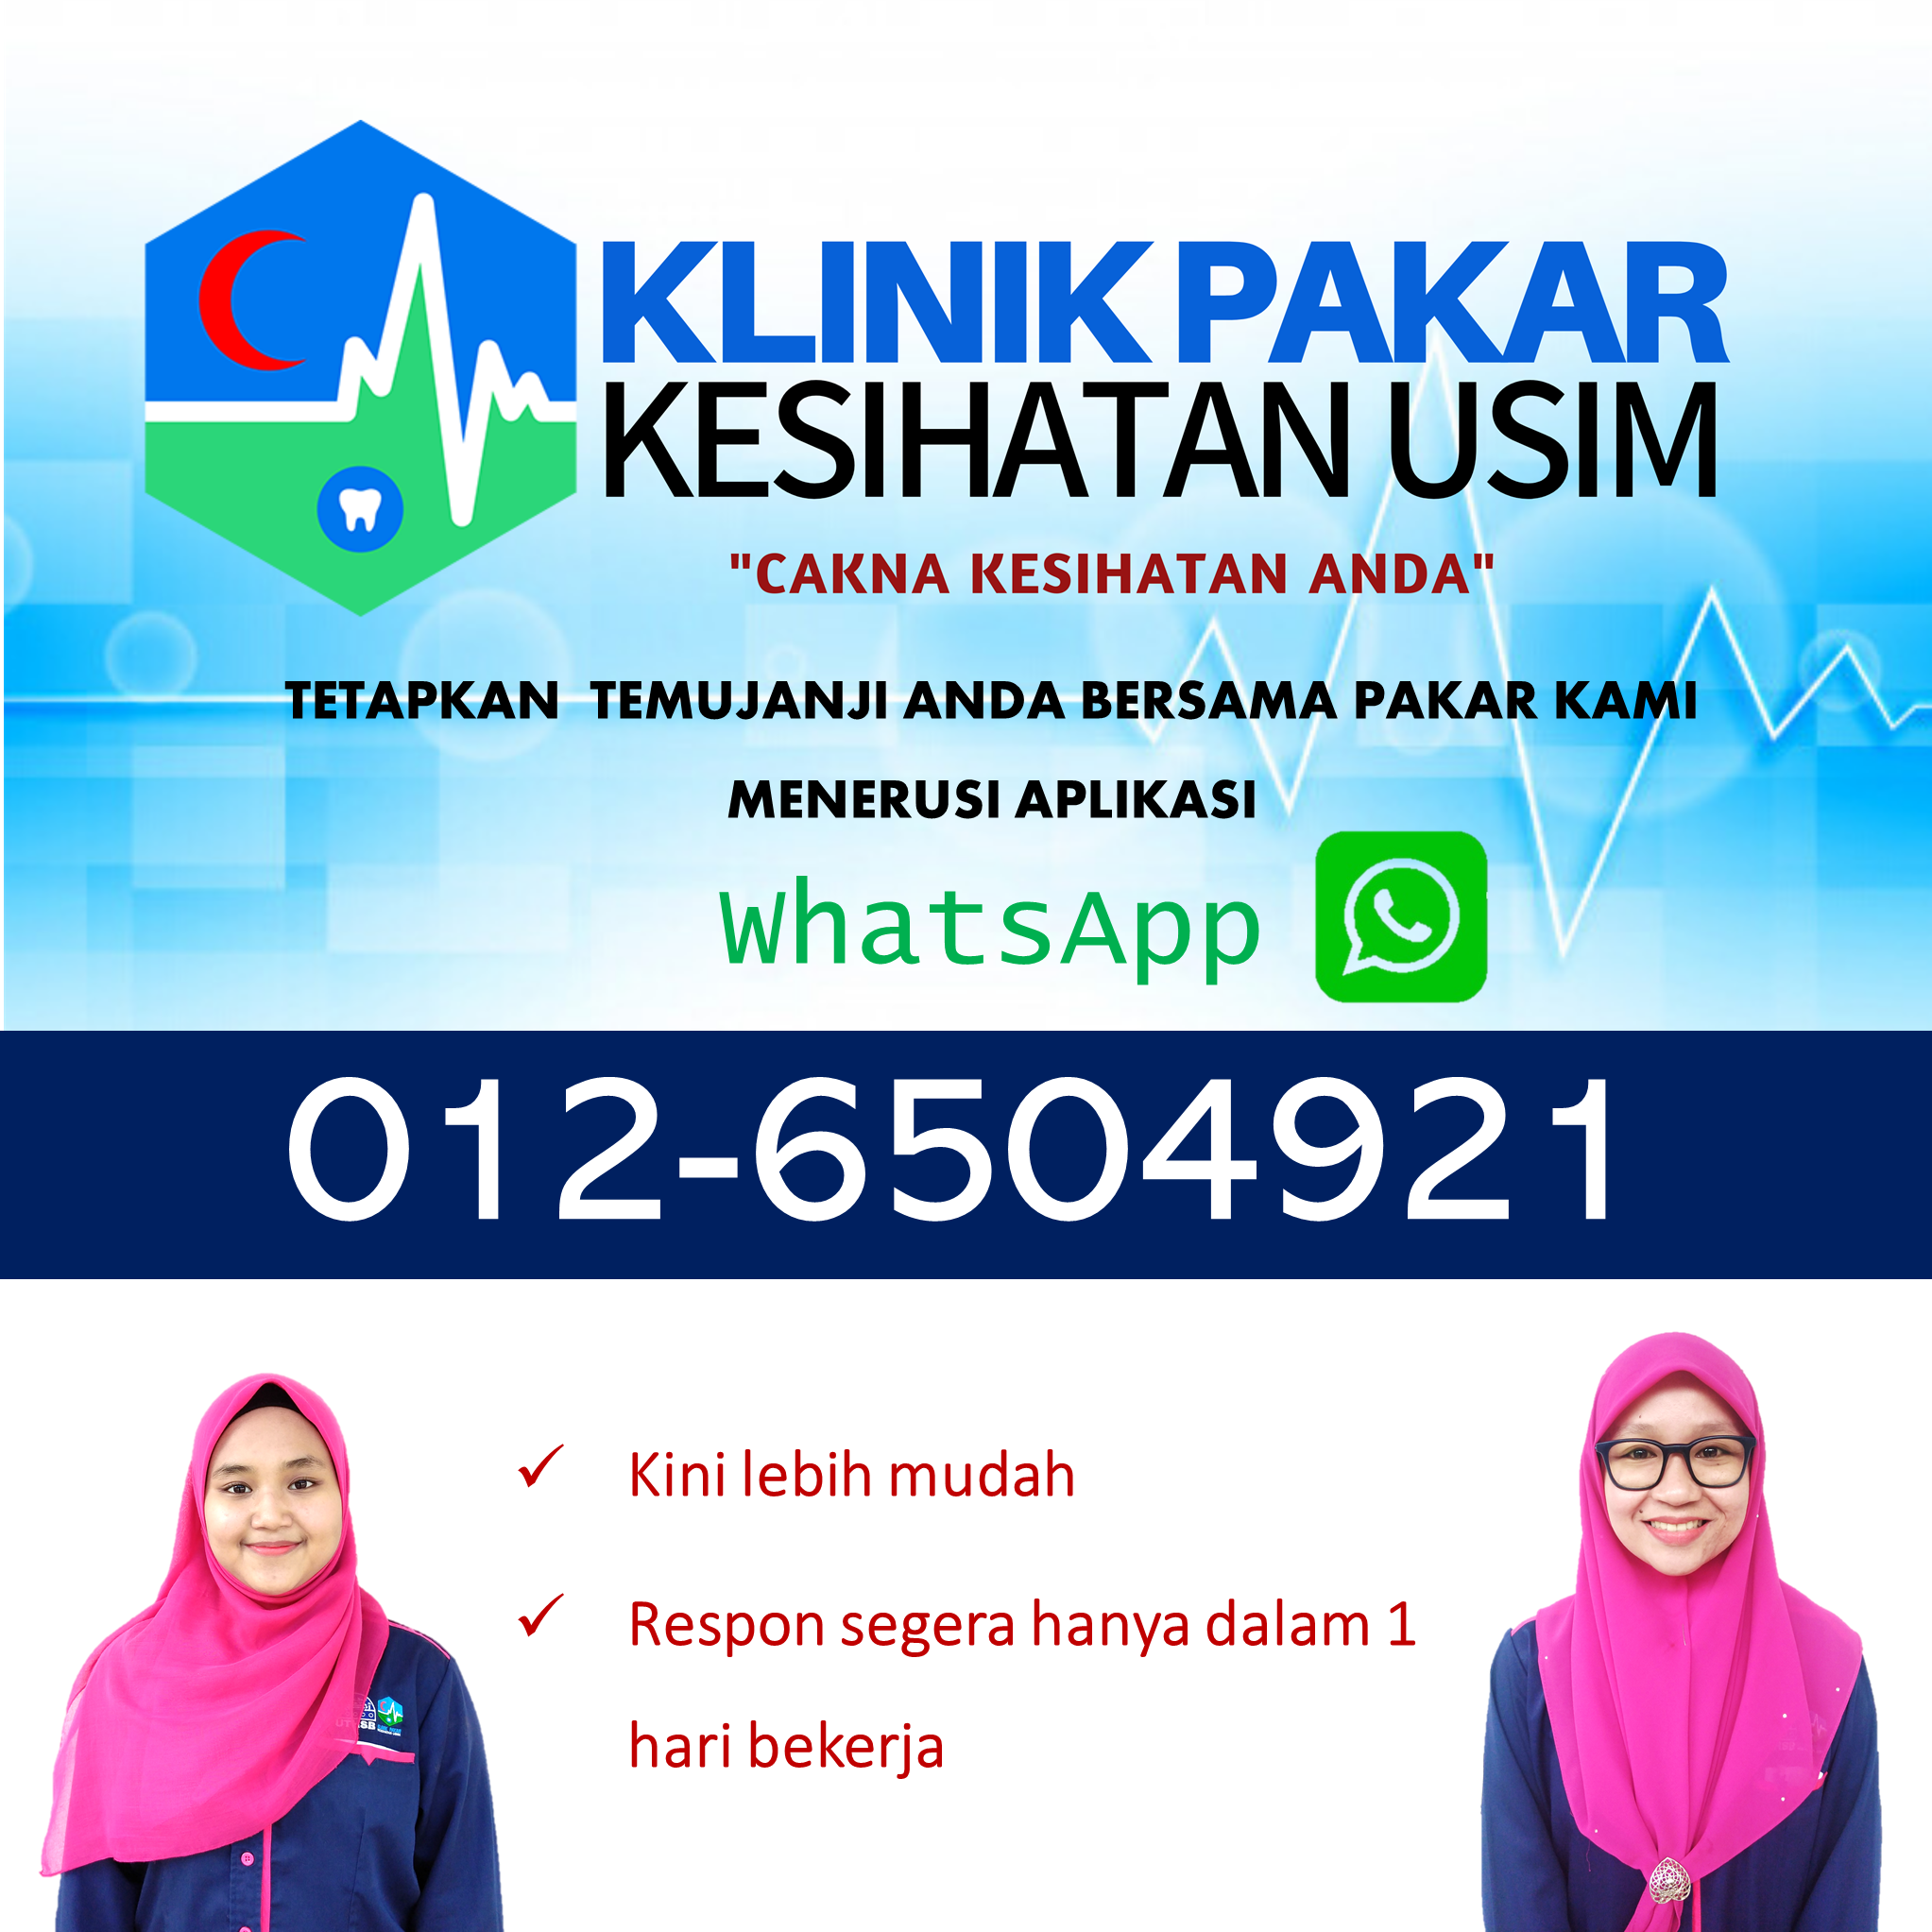 Whatsapp Klinik Pakar Kesihatan